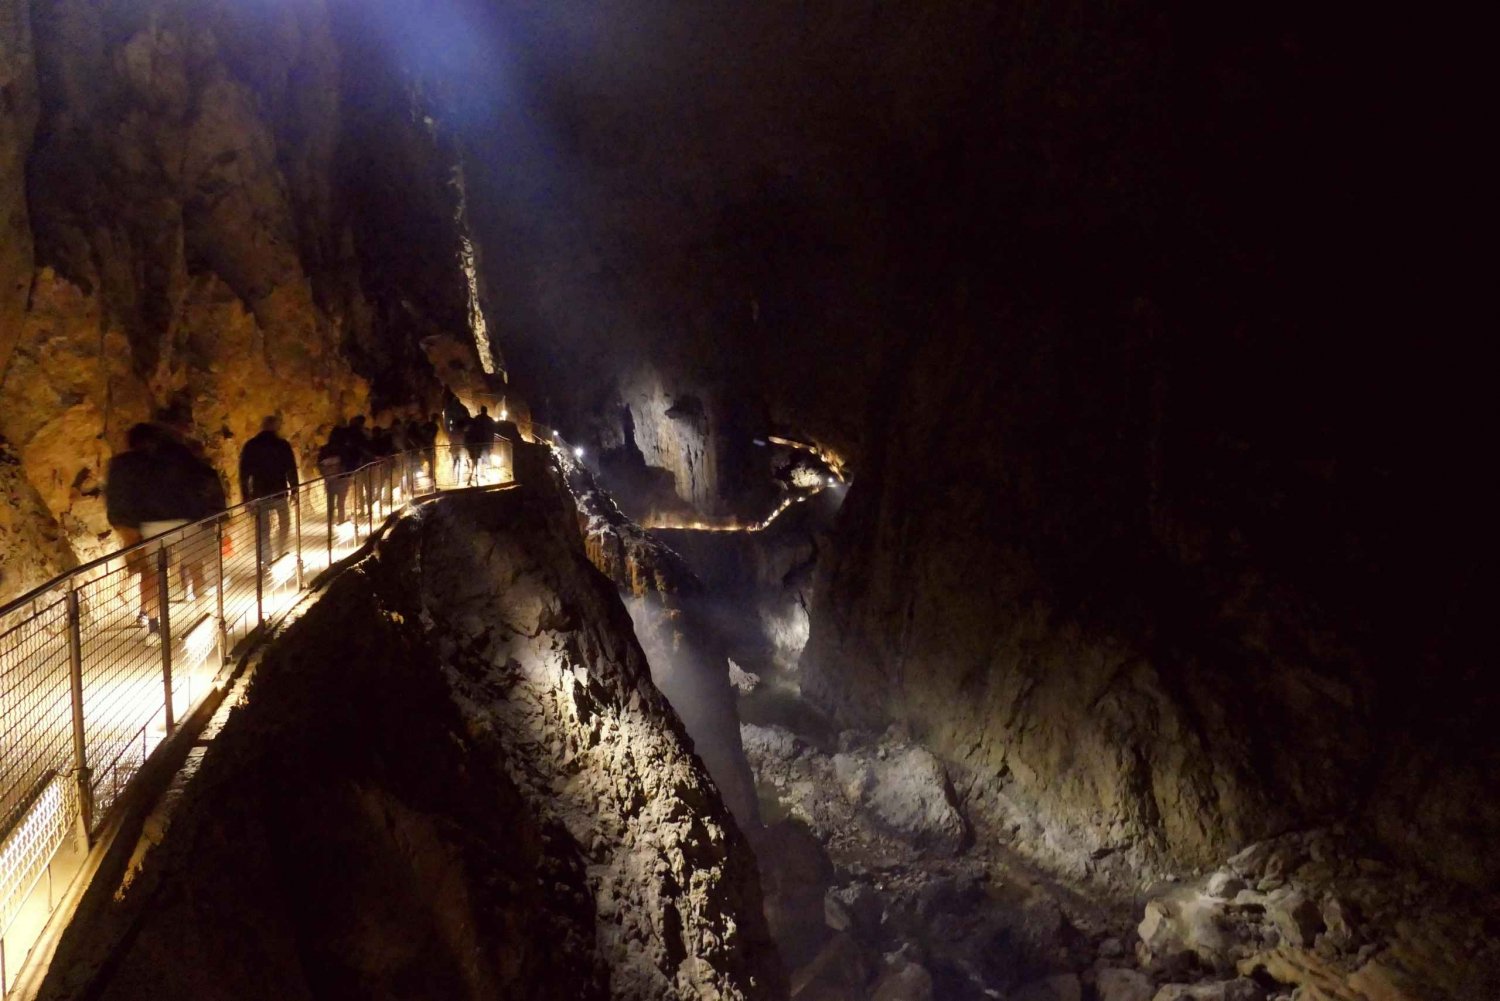 Skocjan cave day tour from Ljubljana